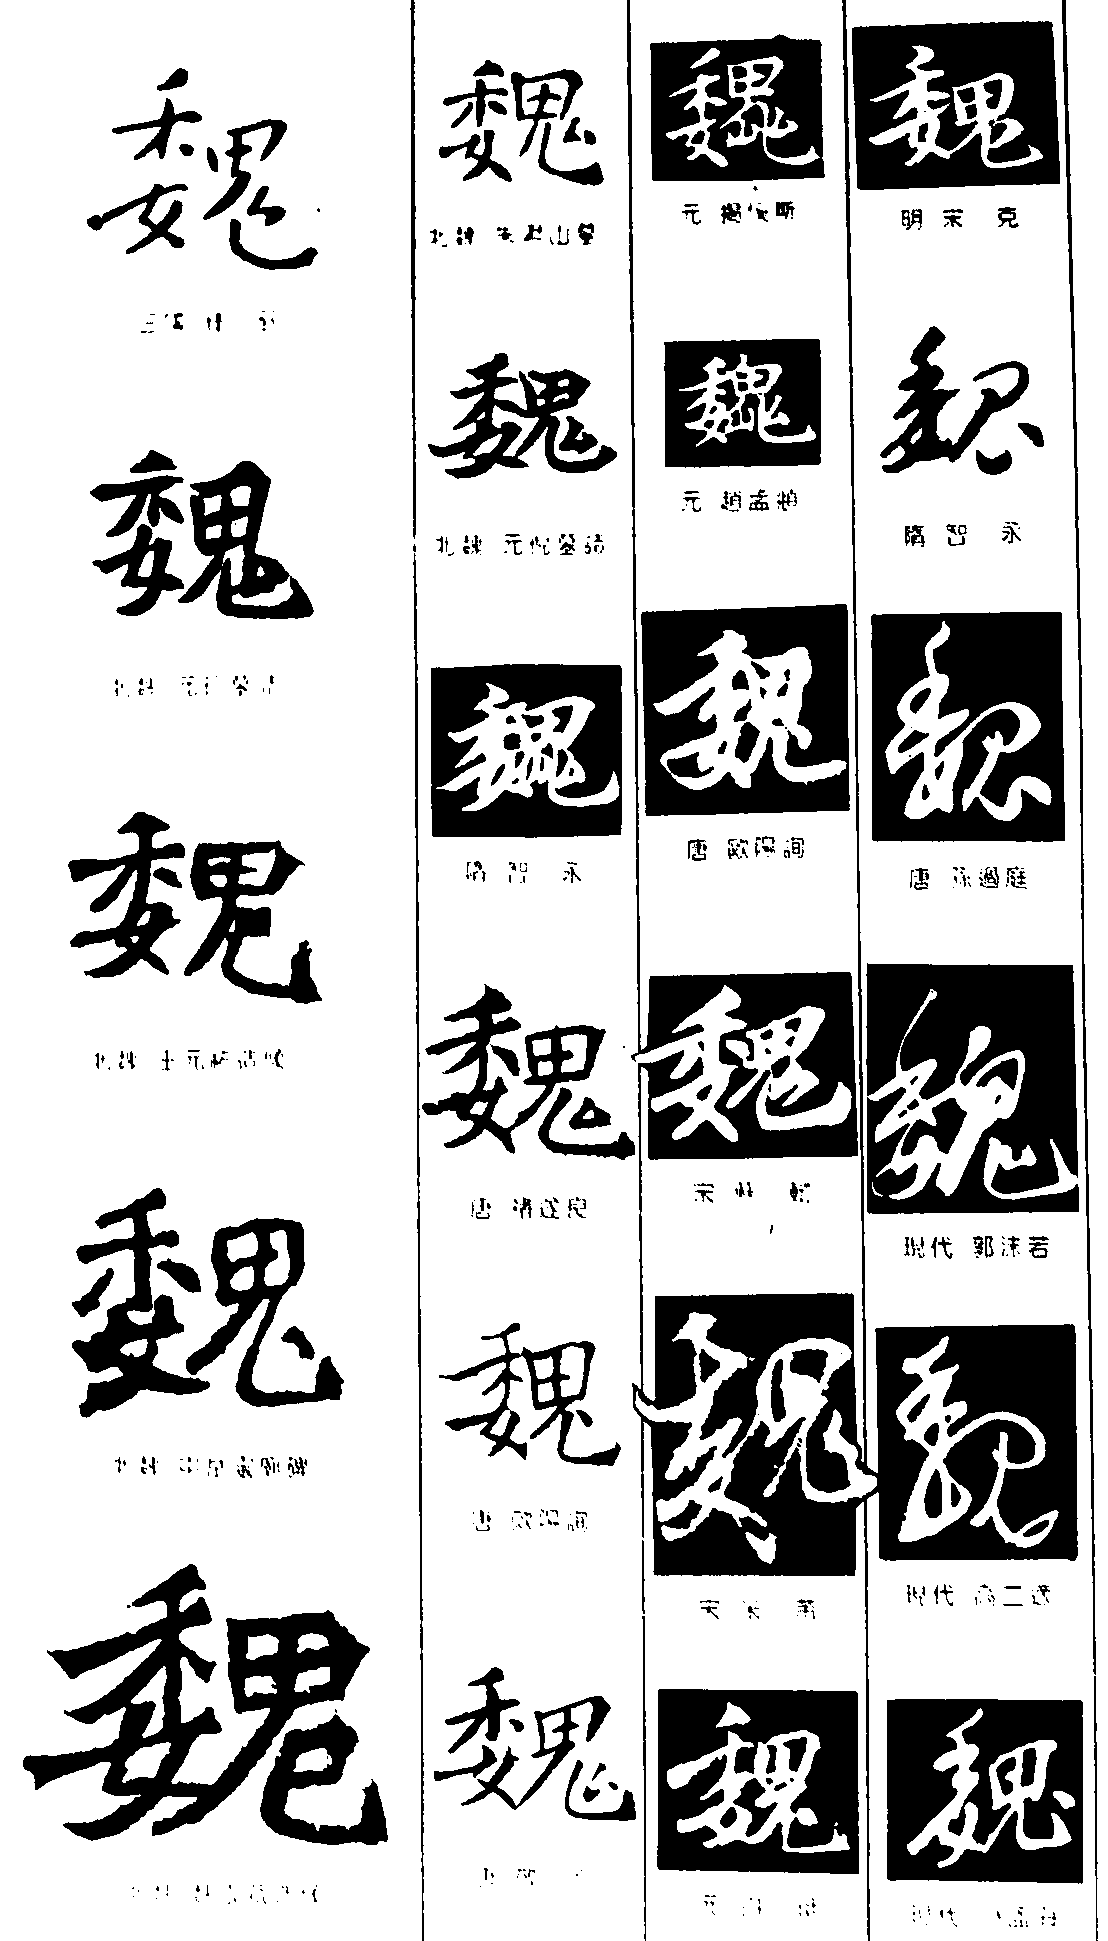 魏 艺术字 毛笔字 书法字 繁体 标志设计 